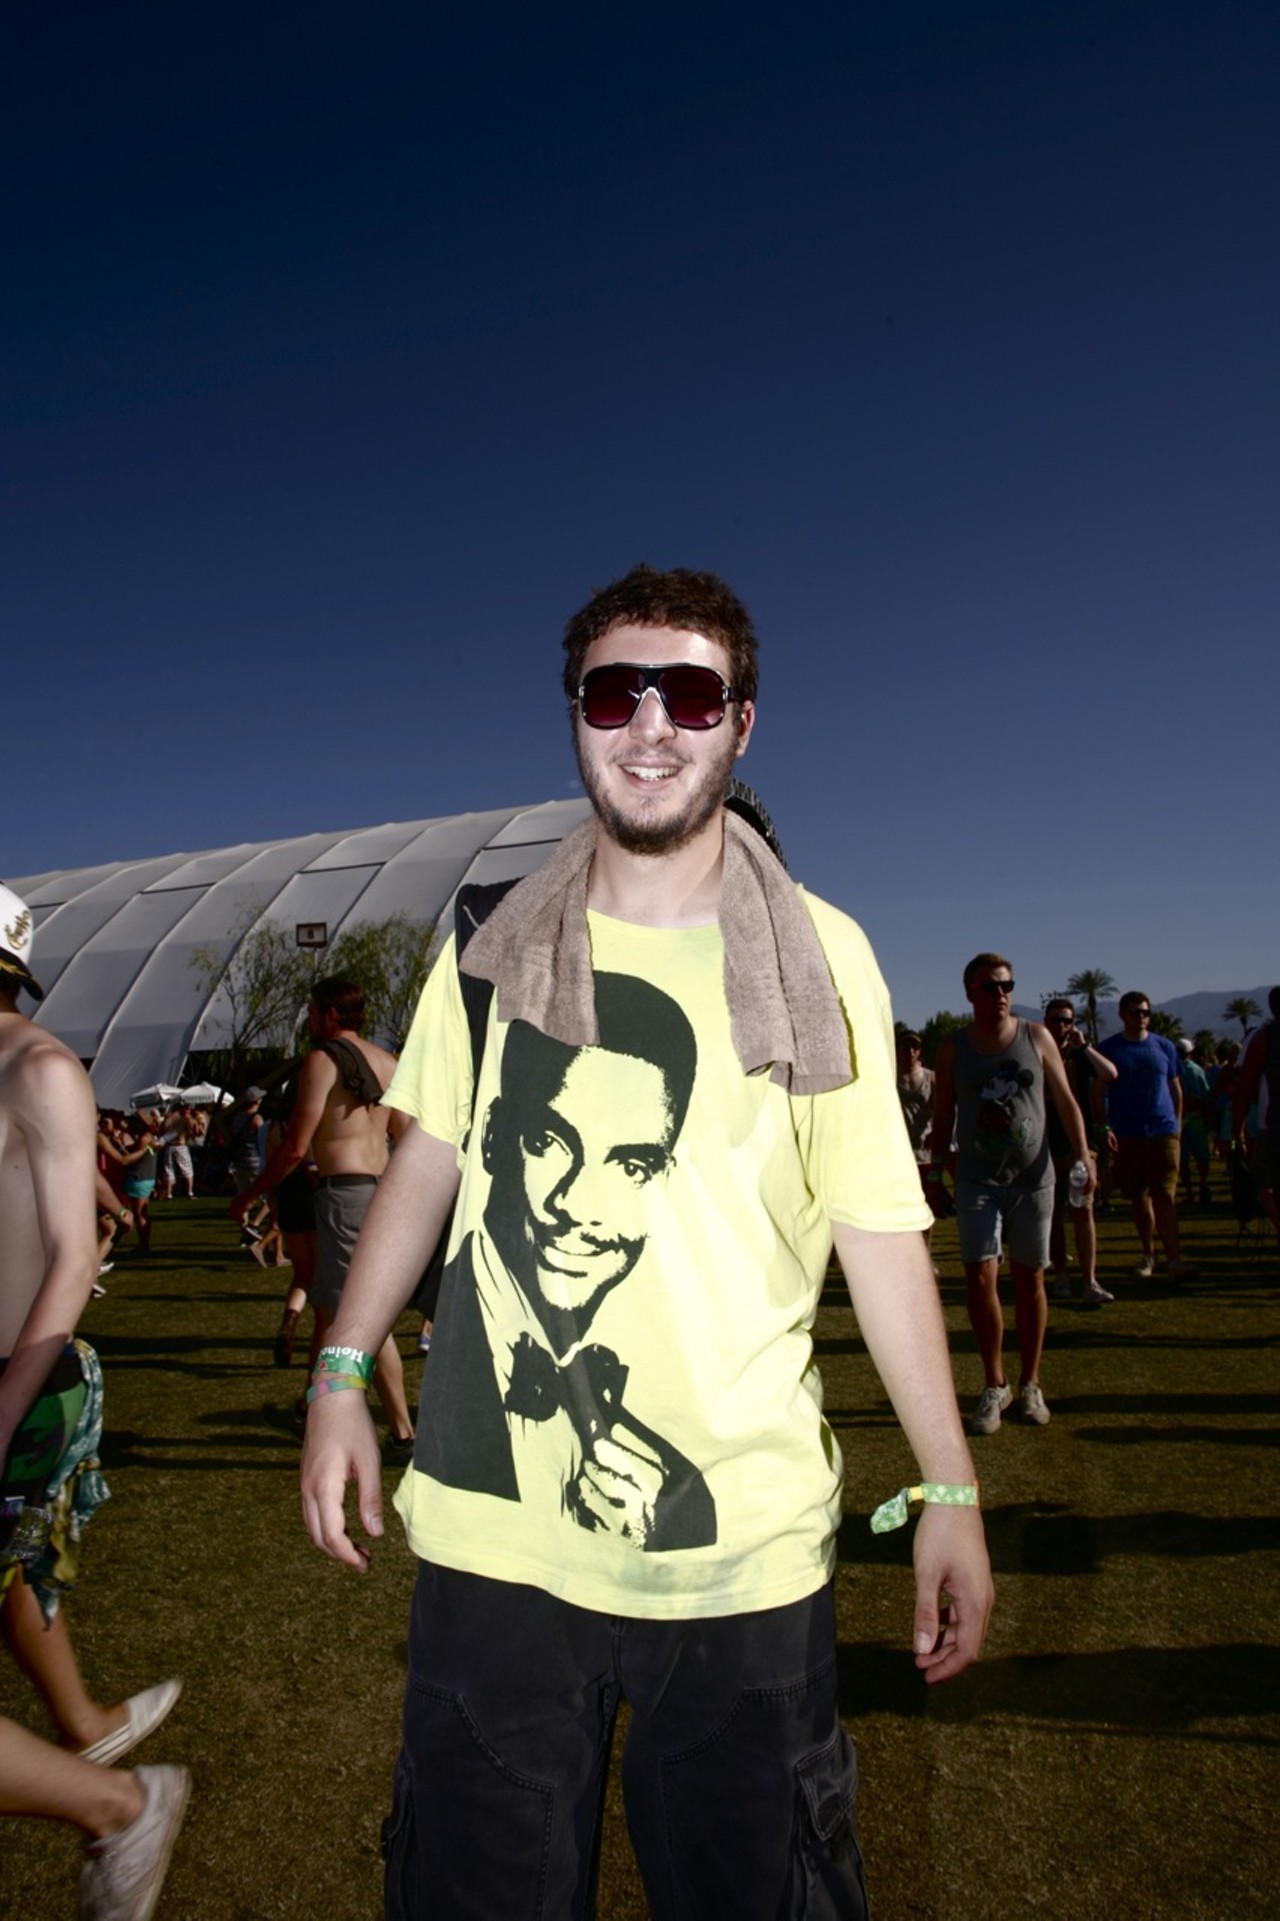 Coachella 2013: Humorous T-Shirts